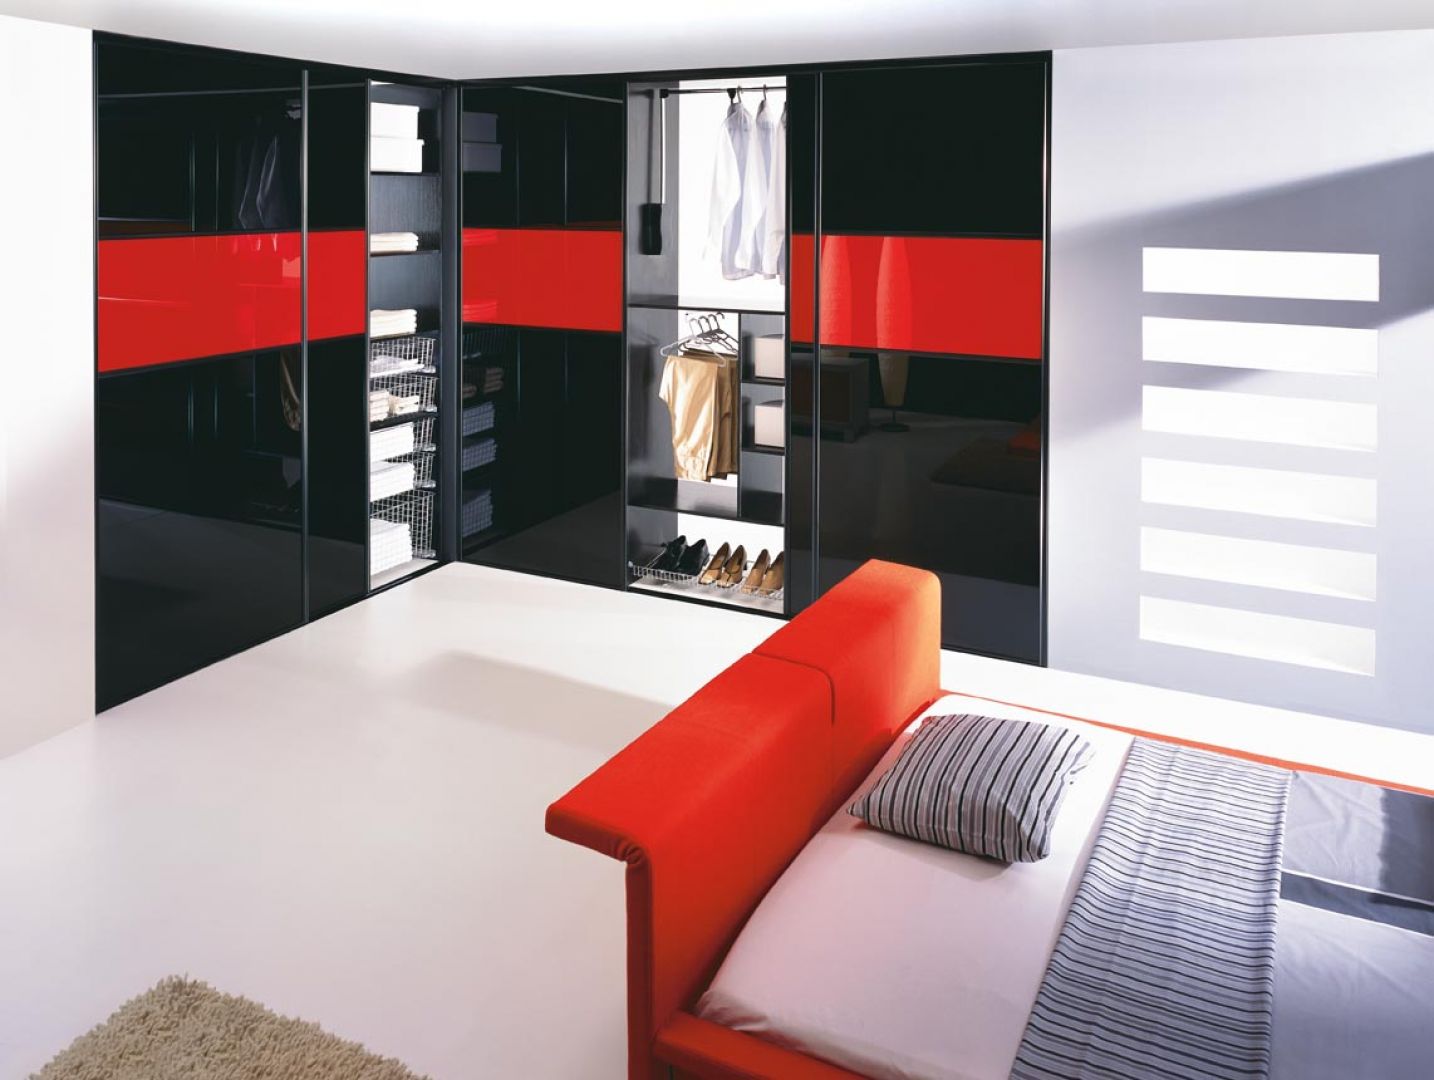 Połyskujące, czarne drzwi wprowadzą do wnętrza sypialni elegancki i gustowny klimat. Fot. Komandor 